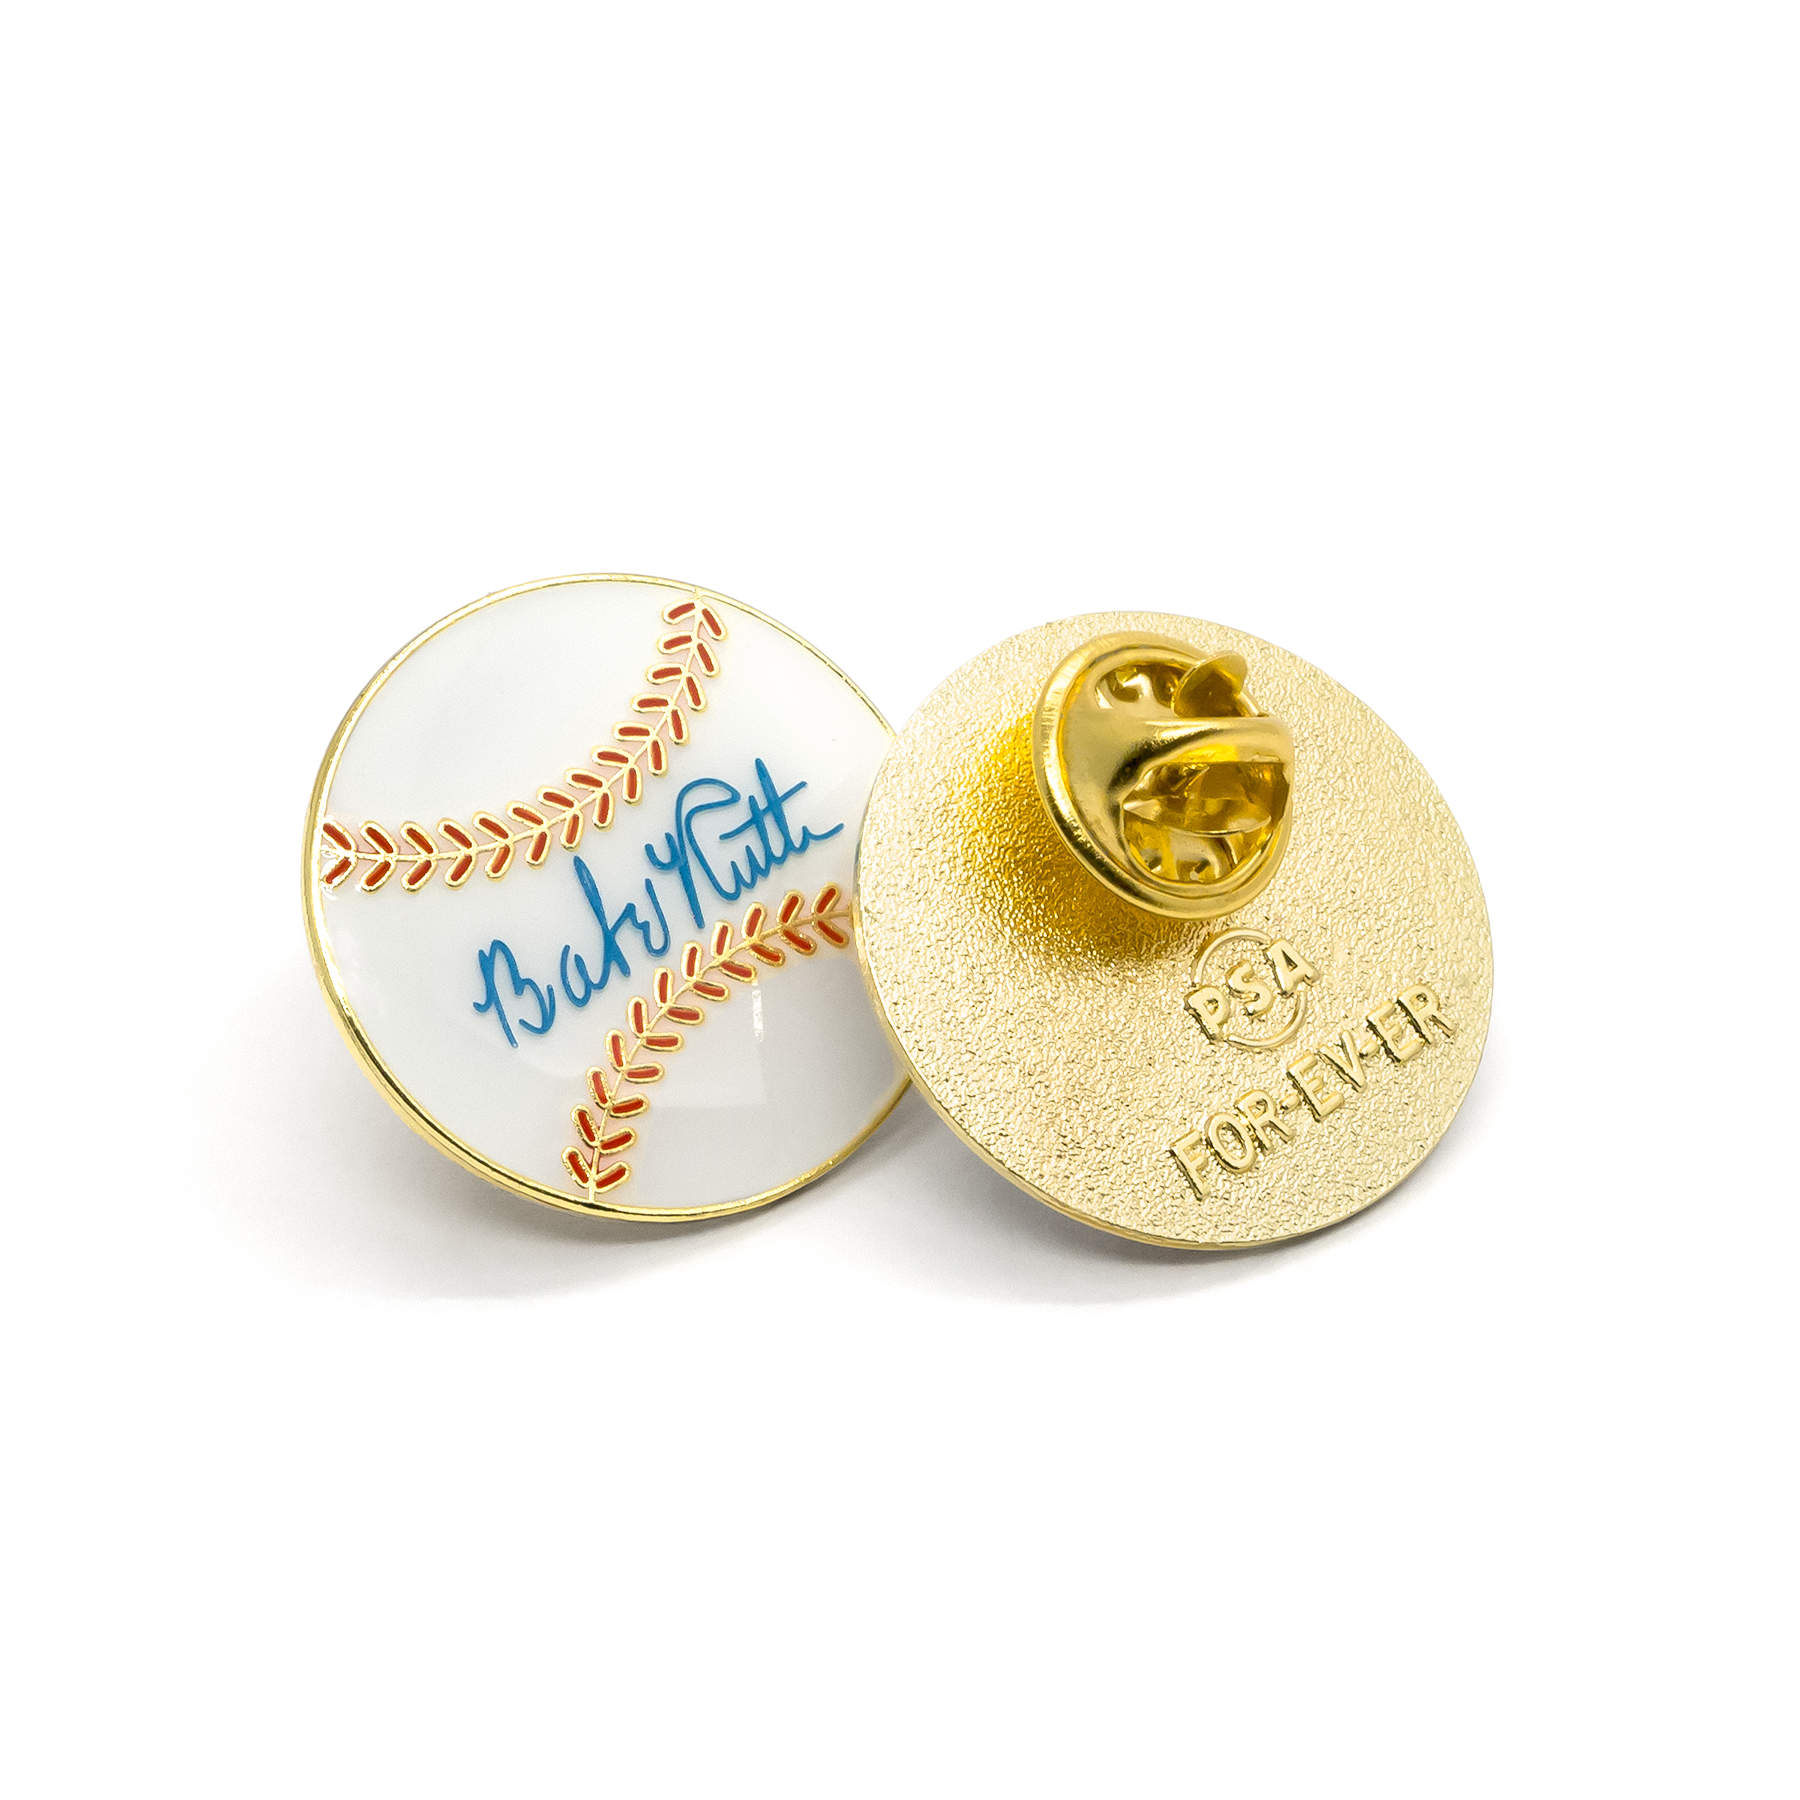 Baseball & Shoe enamel pin set